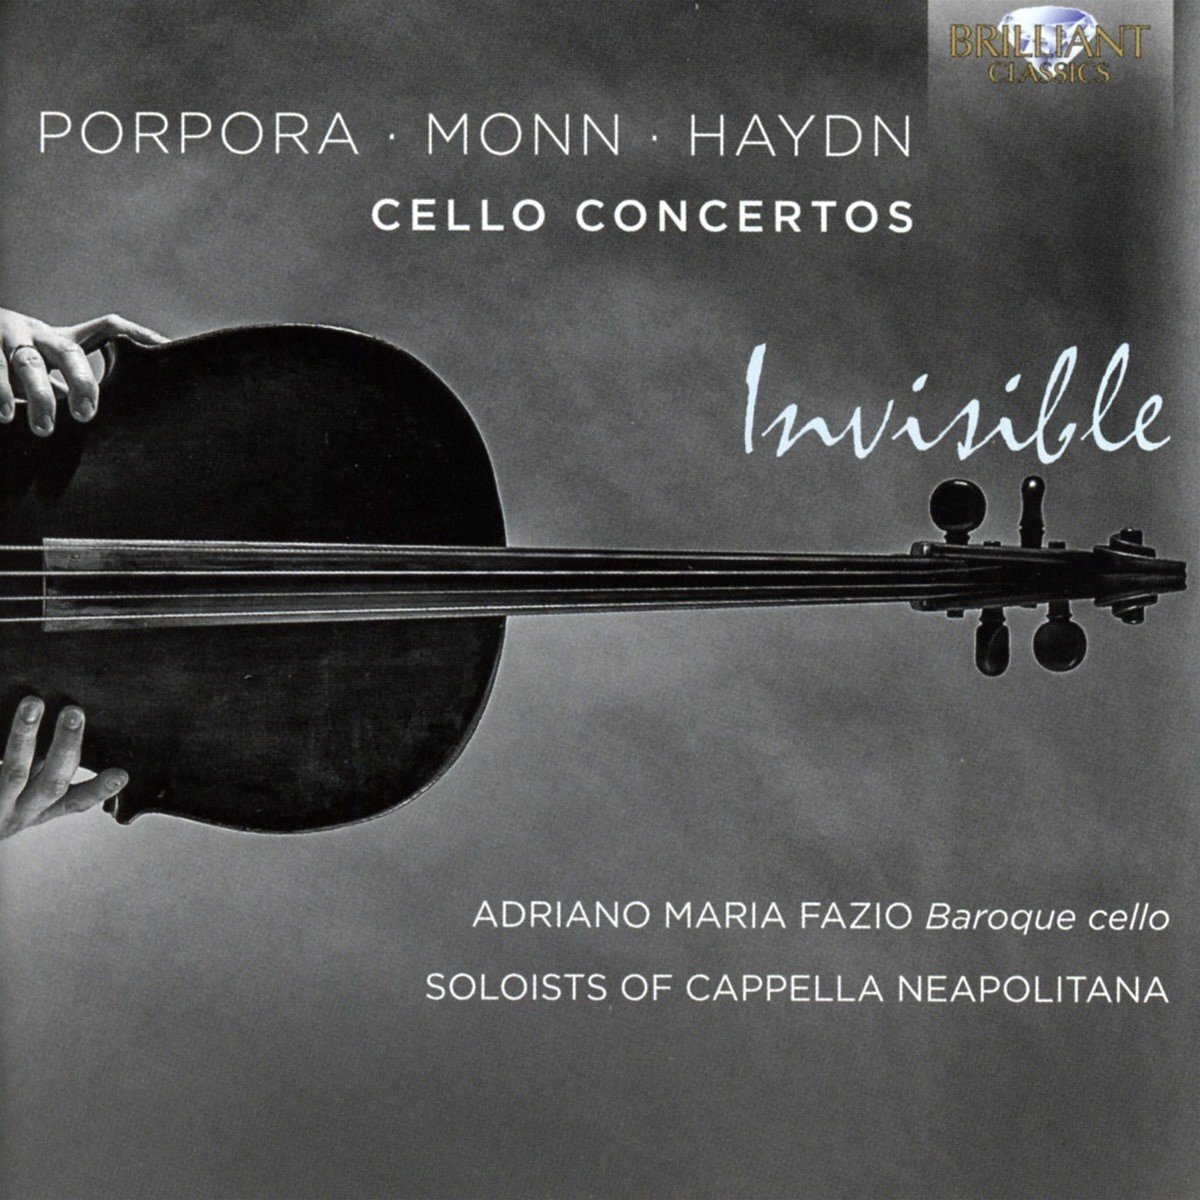 Brilliant Classics Adriano Fazio - Porpora, Monn, Haydn: Cello Concertos (CD)